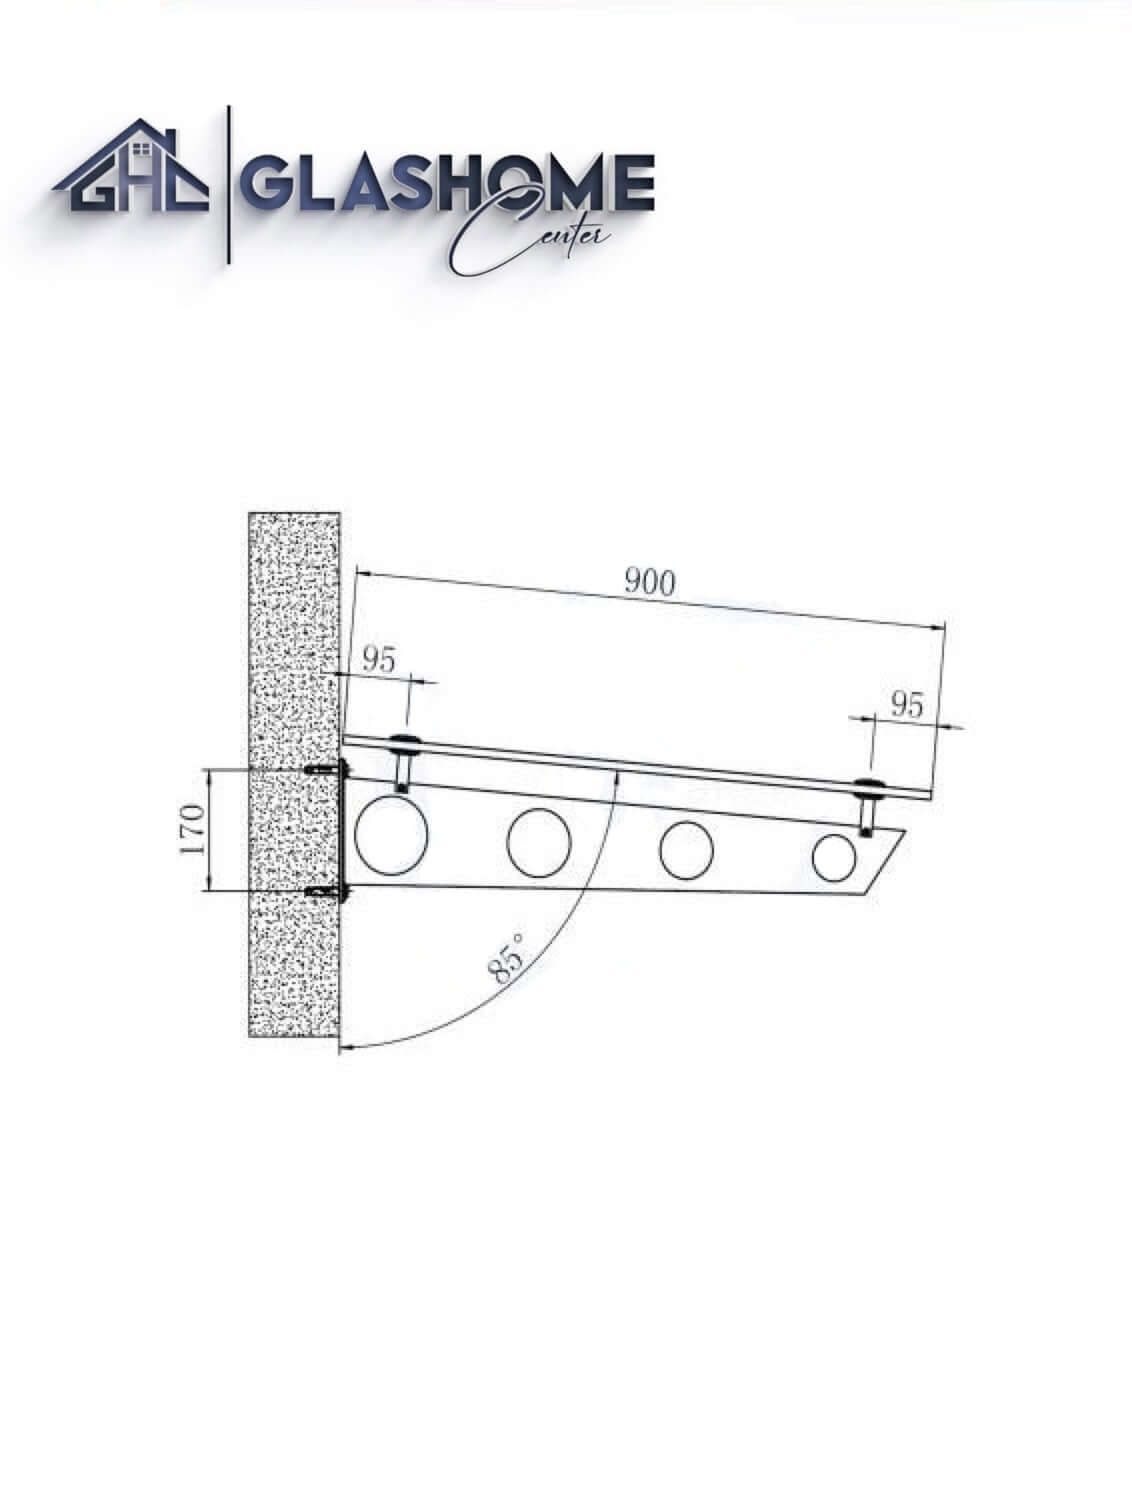 GlasHomeCenter - Glasvordach - Milchglas - 250x90cm - 13.1mm VSG - inkl. 3 schwarze Edelstahlhalterungen Variante "Stockholm"